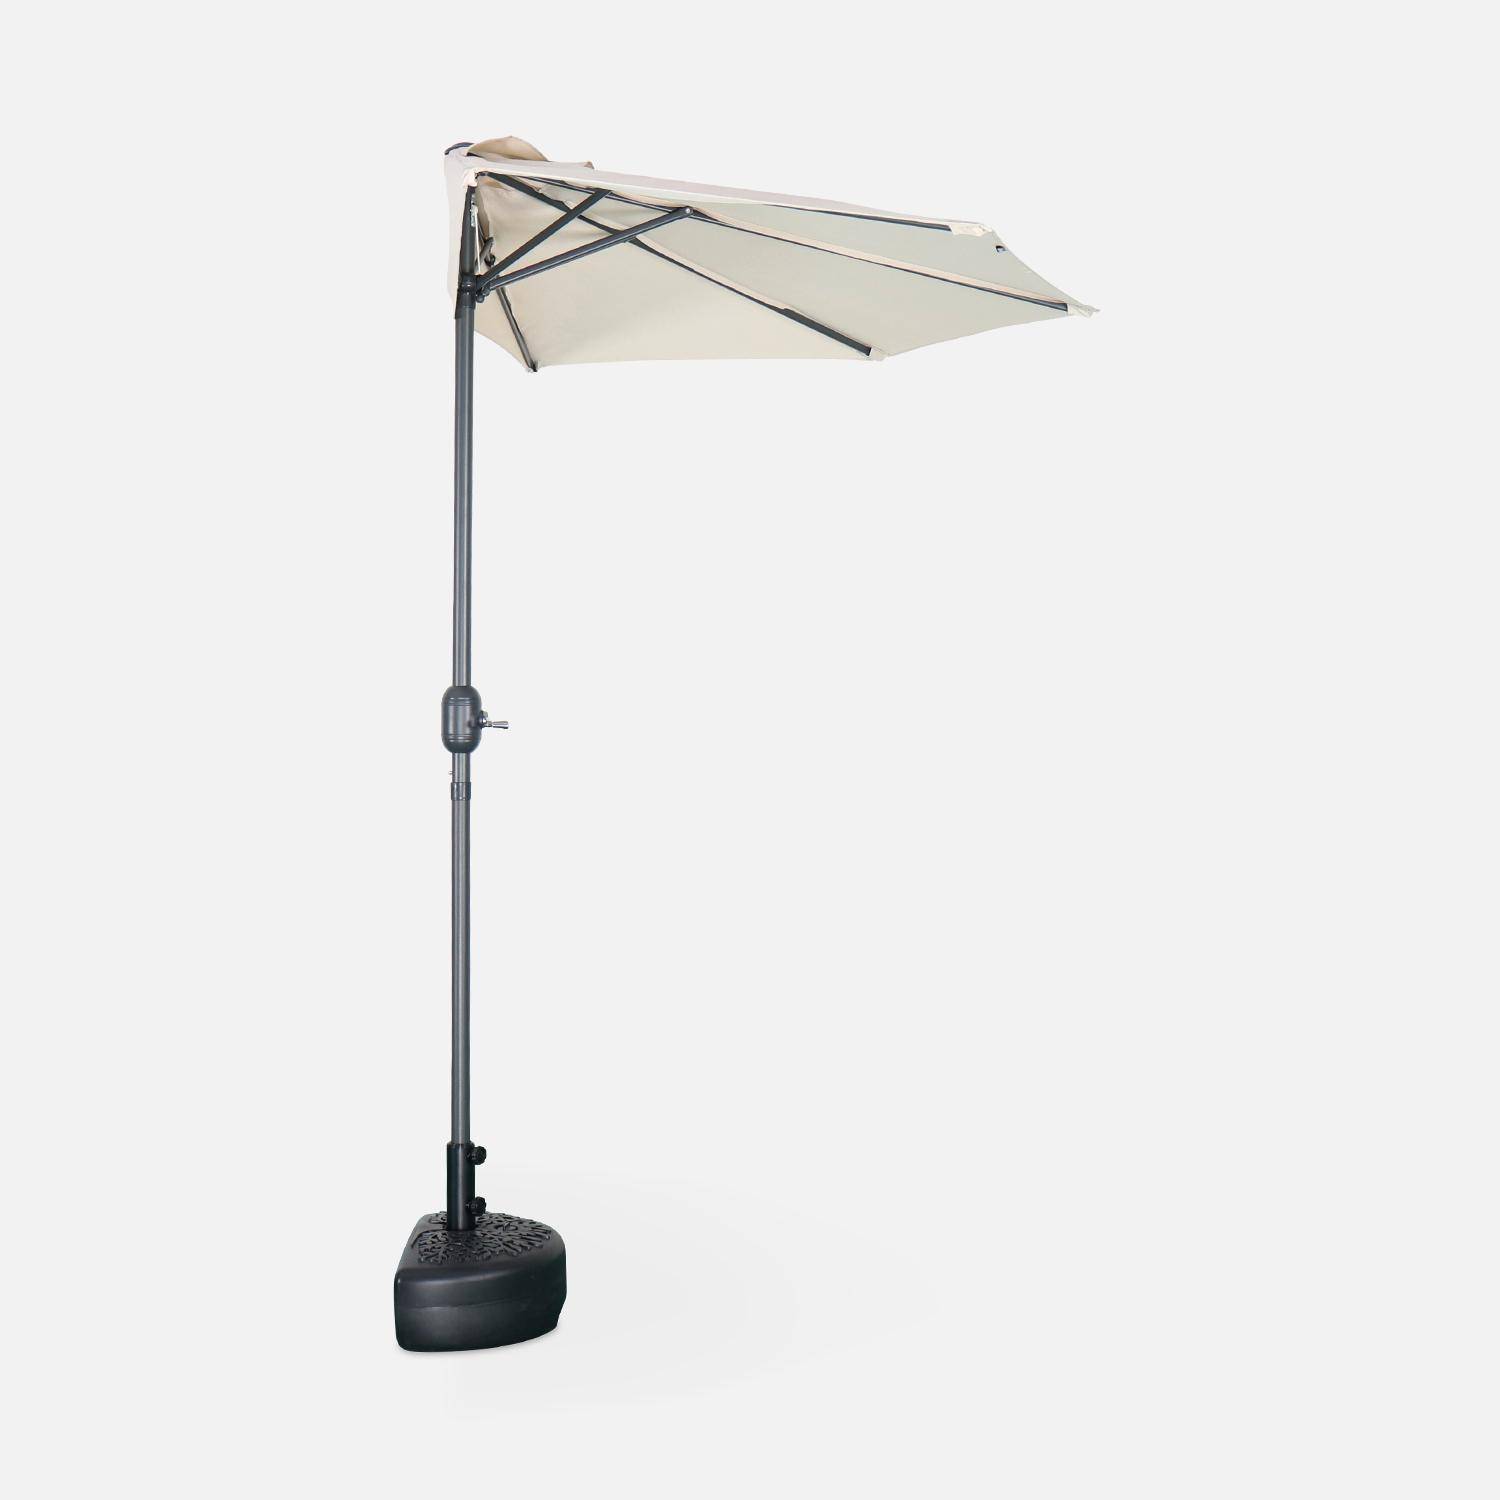 Ombrellone da balcone Ø250cm - CALVI - Mezzo ombrellone dritto, palo in alluminio con manovella, telo colore sabbia Photo4